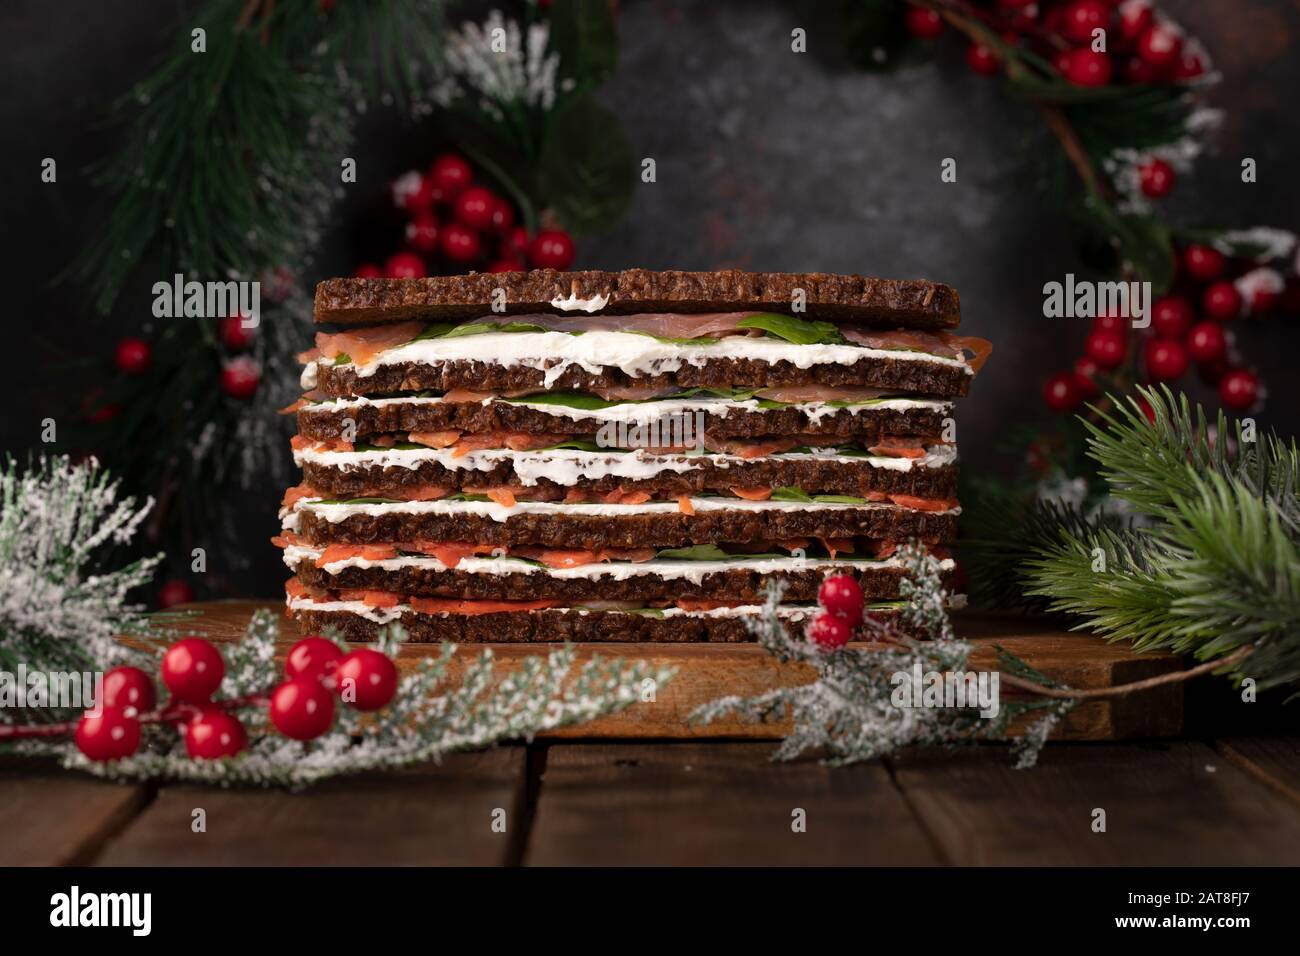 Torta di salmone composta da diversi strati alternati di pane di segale, formaggio cremoso, fette di salmone affumicato e foglie di spinaci, decorato per Natale. Foto Stock